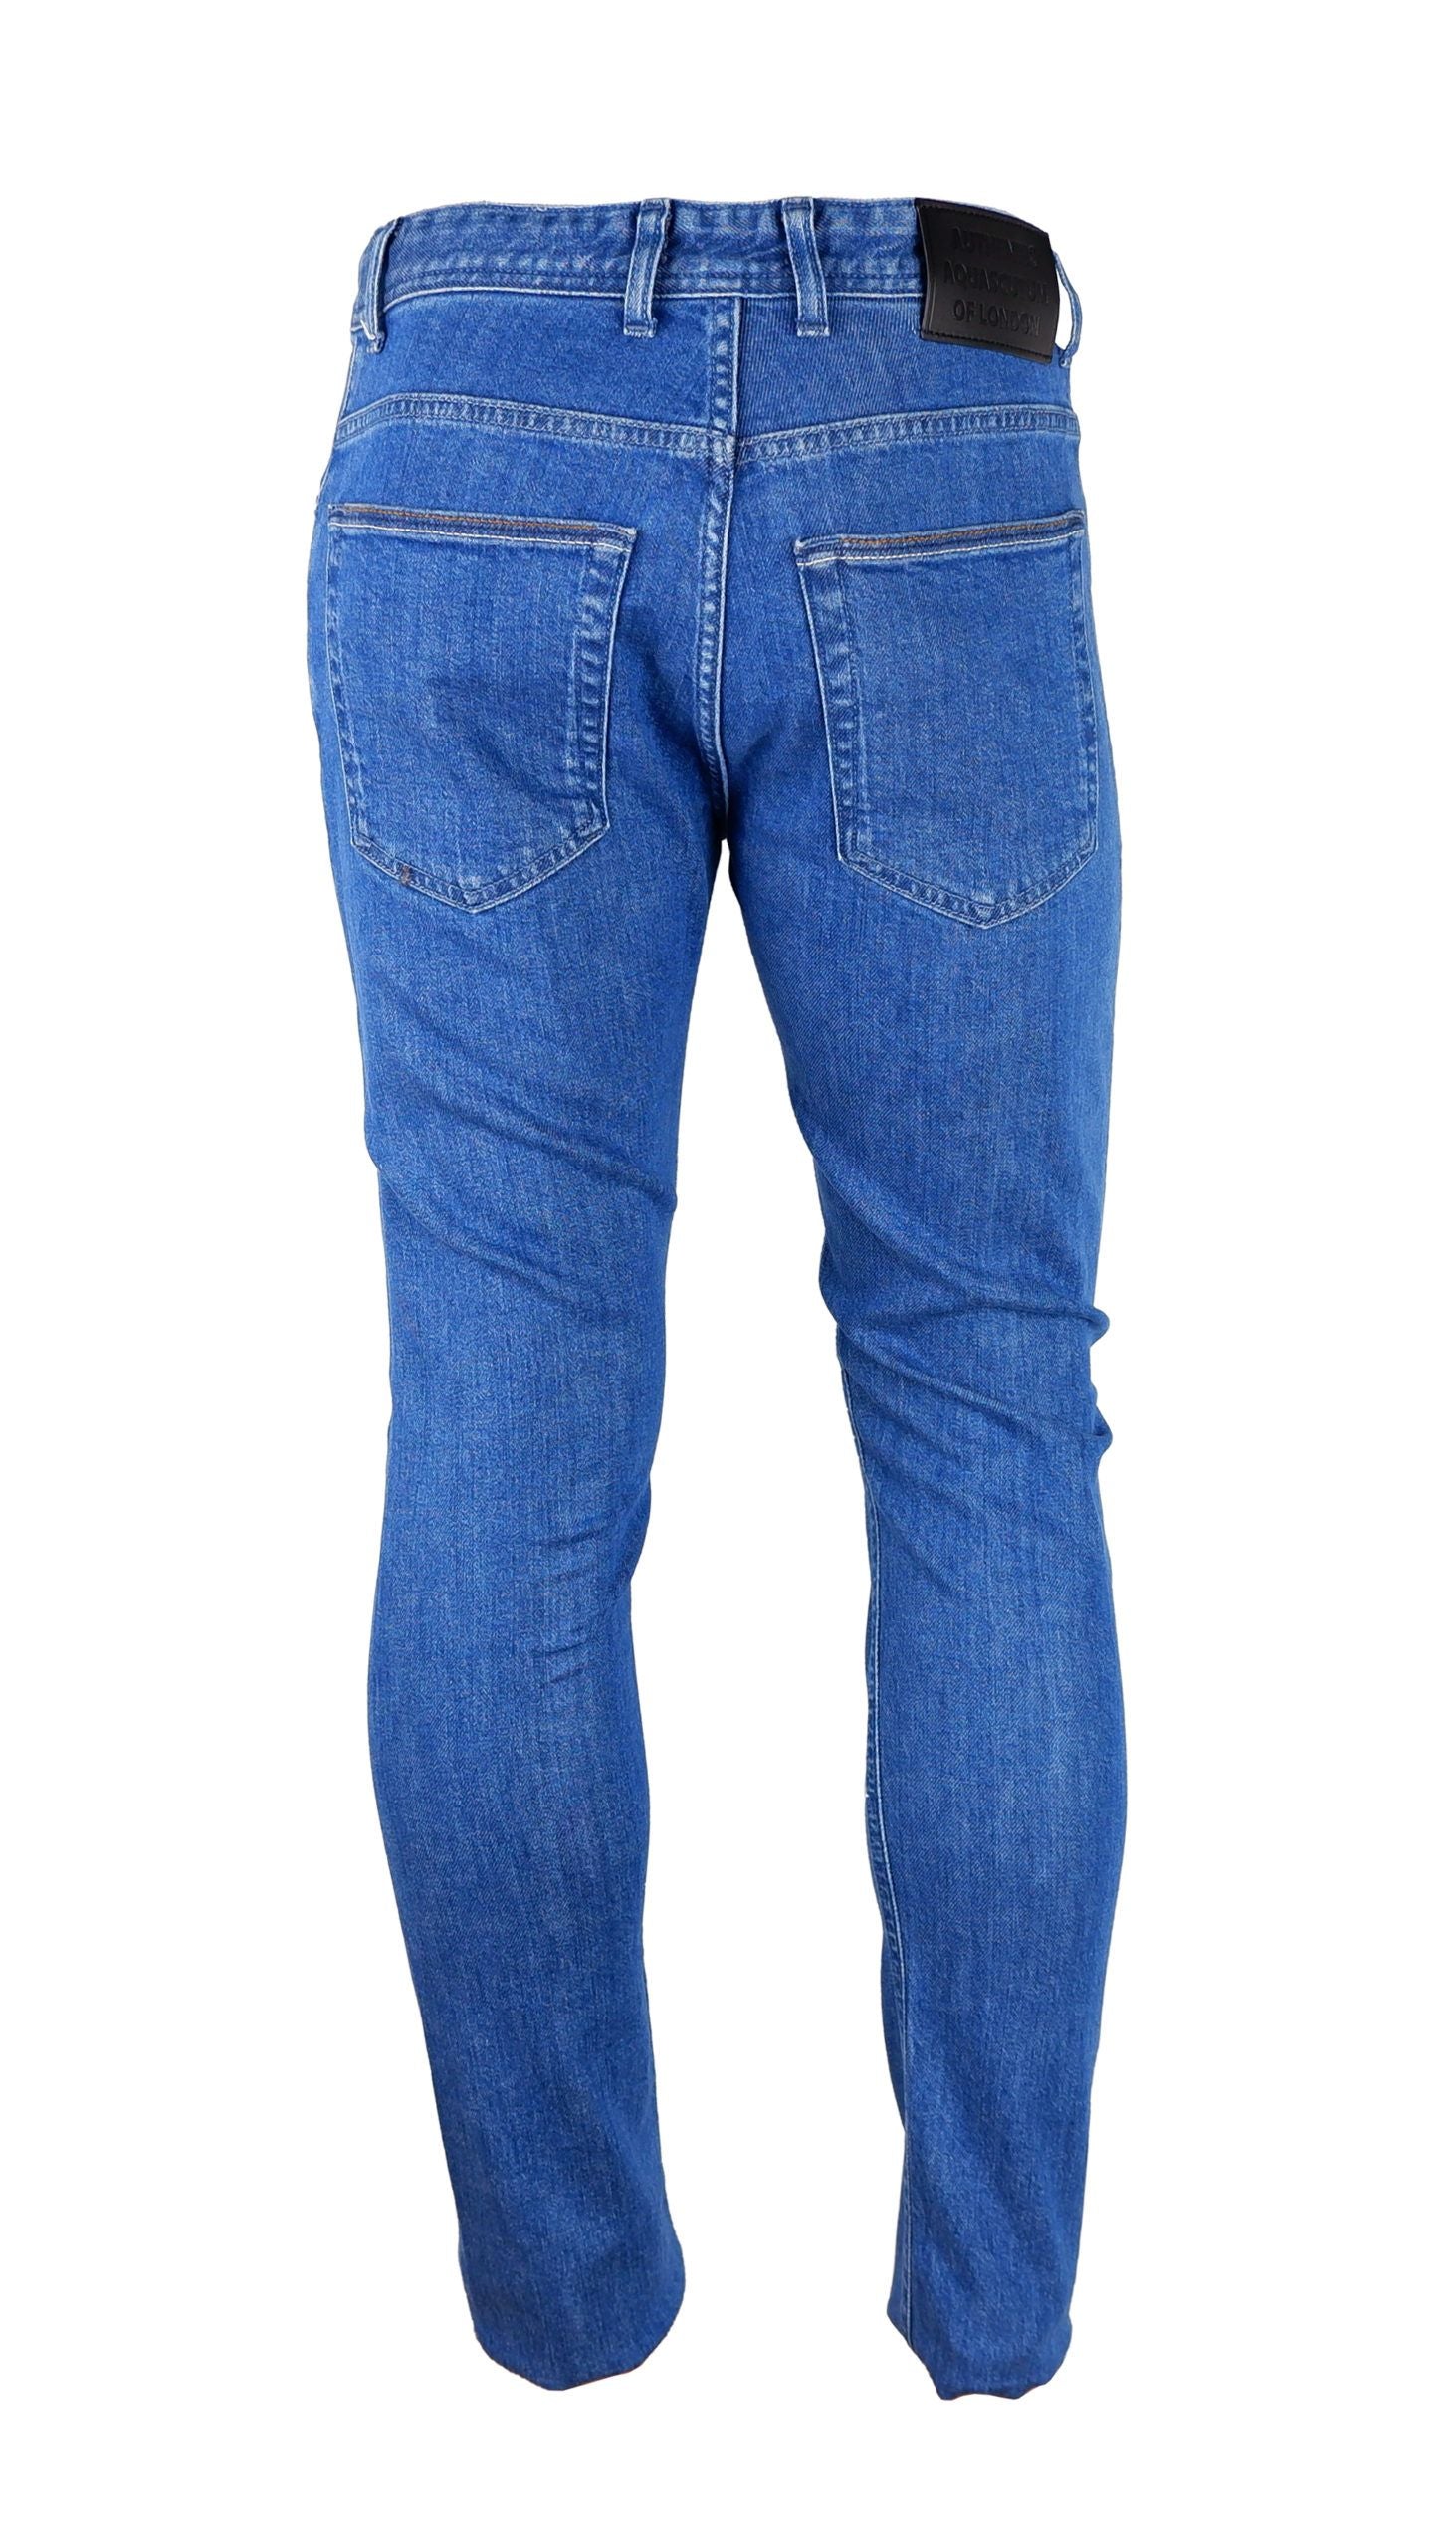 Chic Light Blue Cotton Denim Jeans